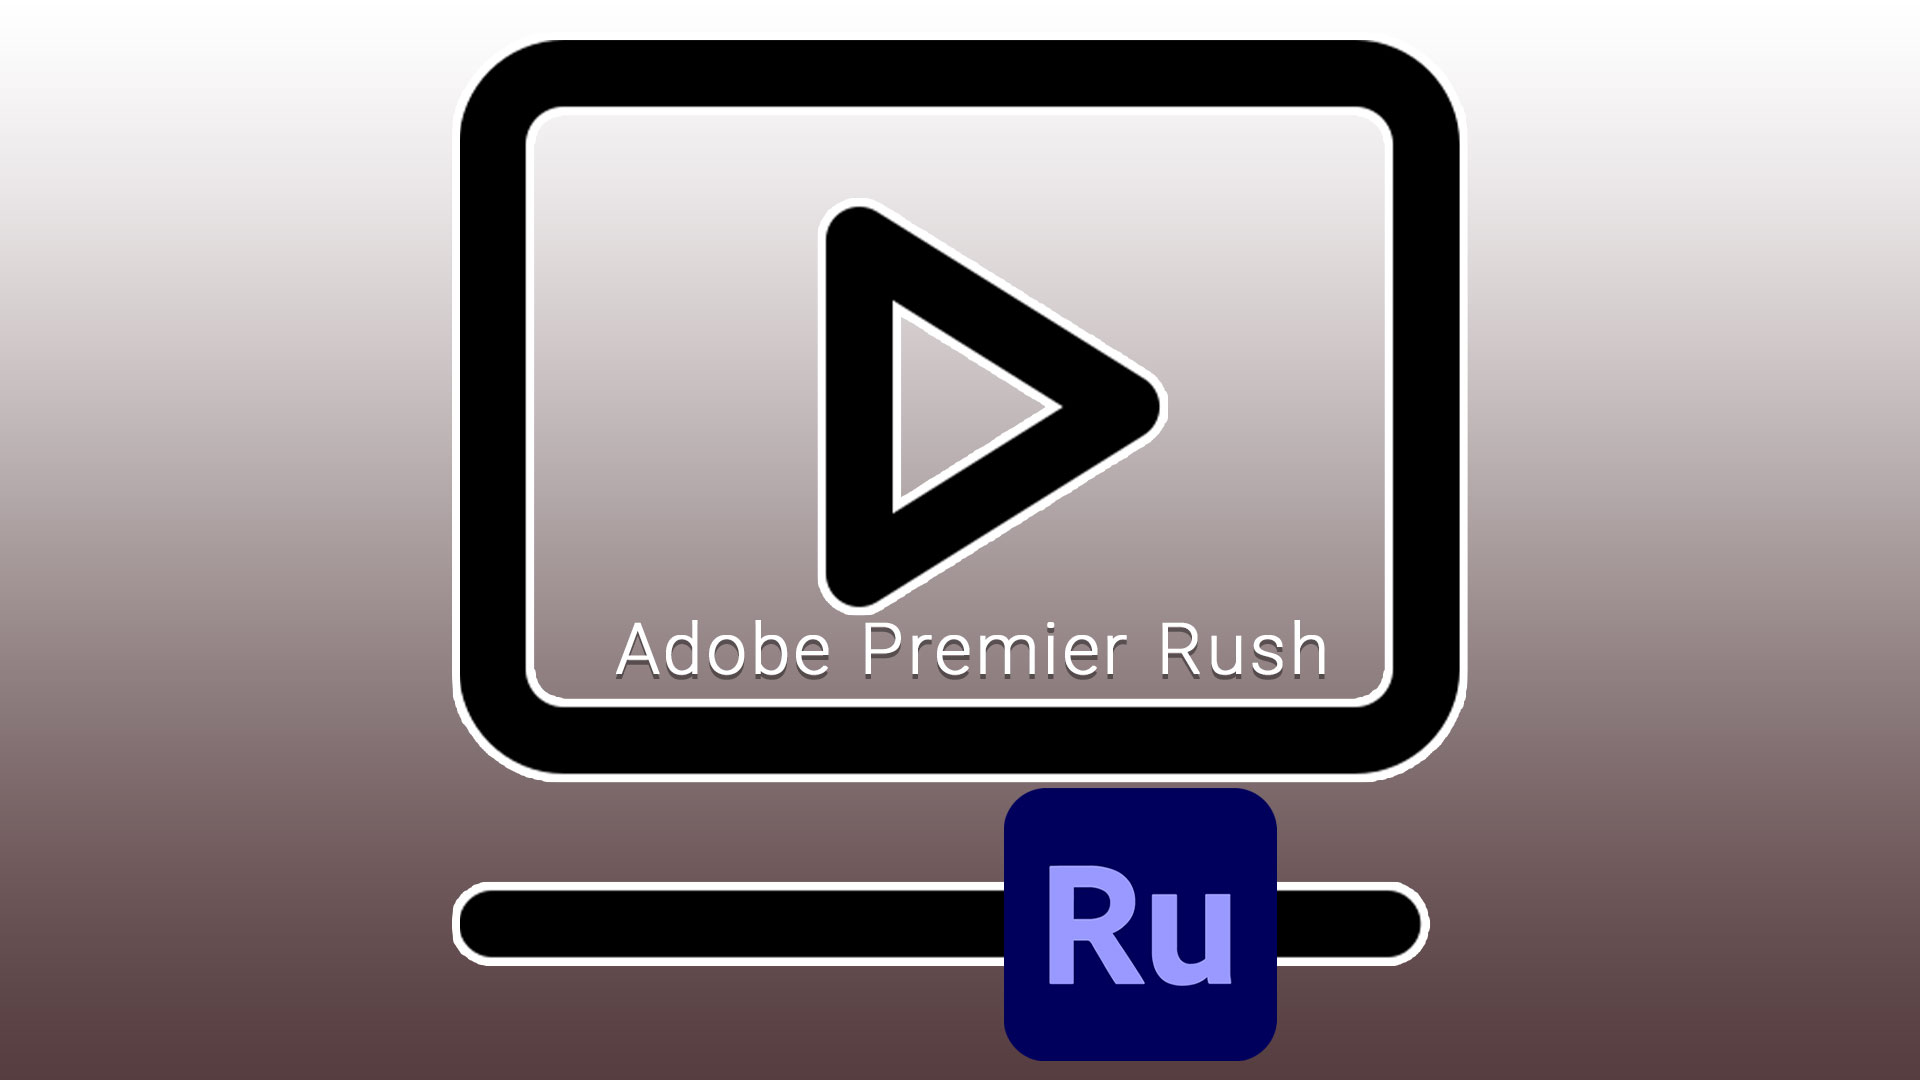  Adobe Premier Rush